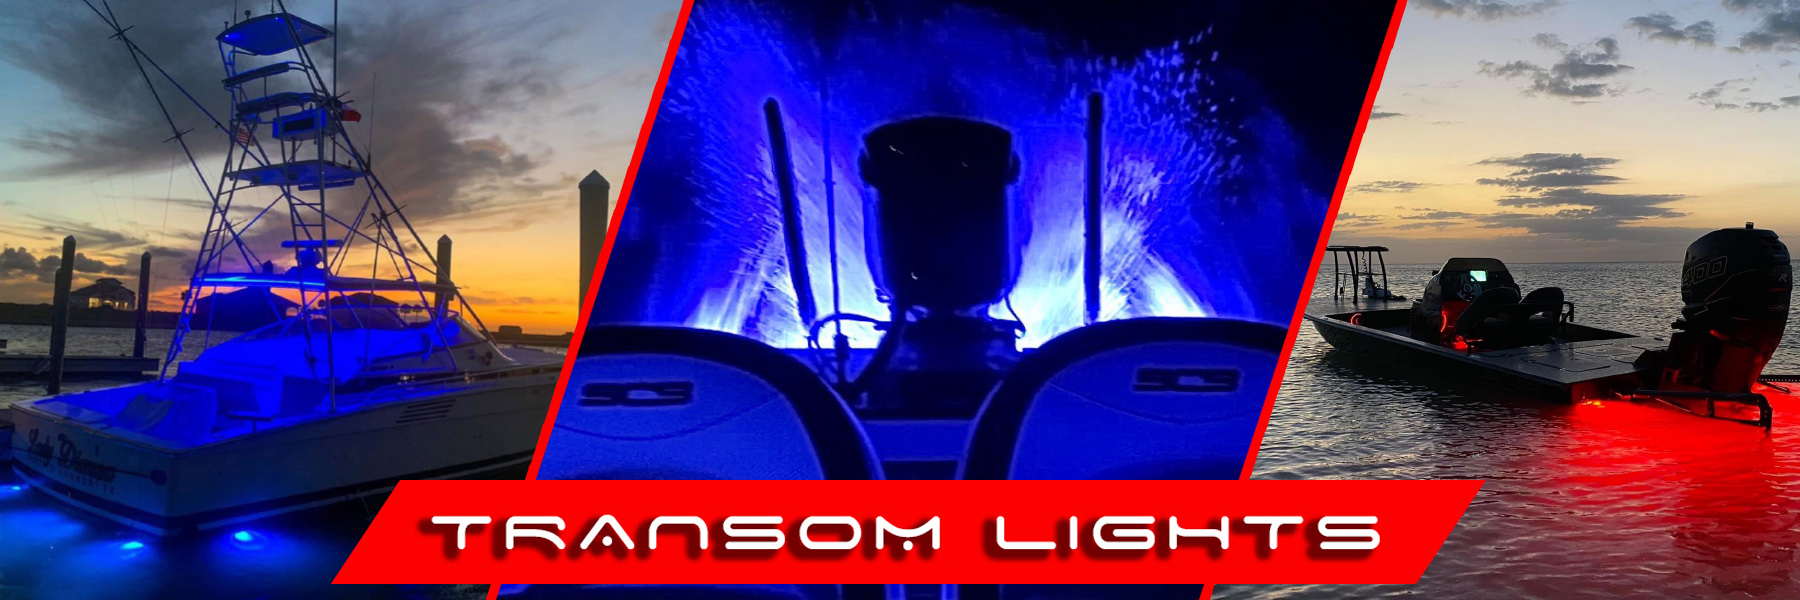 Transom Lights